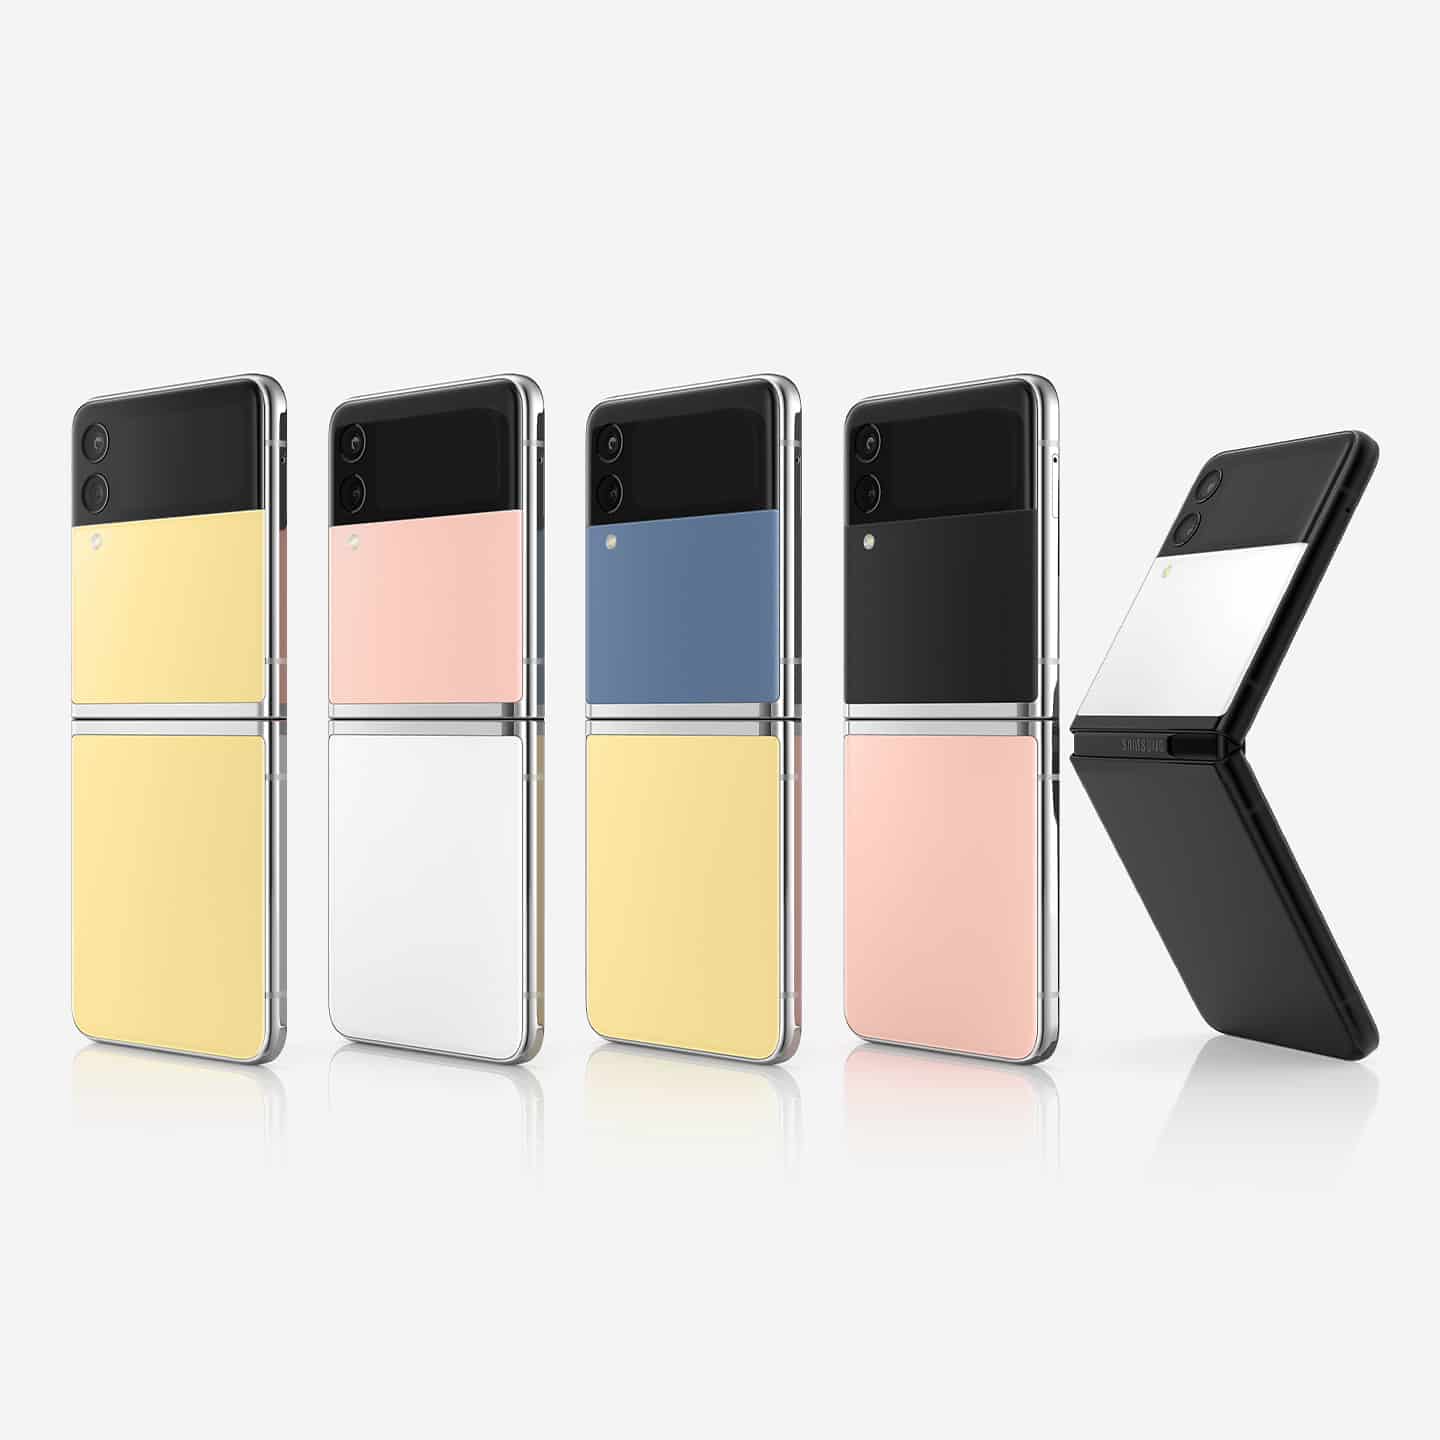 Celulares Samsung Flip nas cores amarelo, rosa e azul